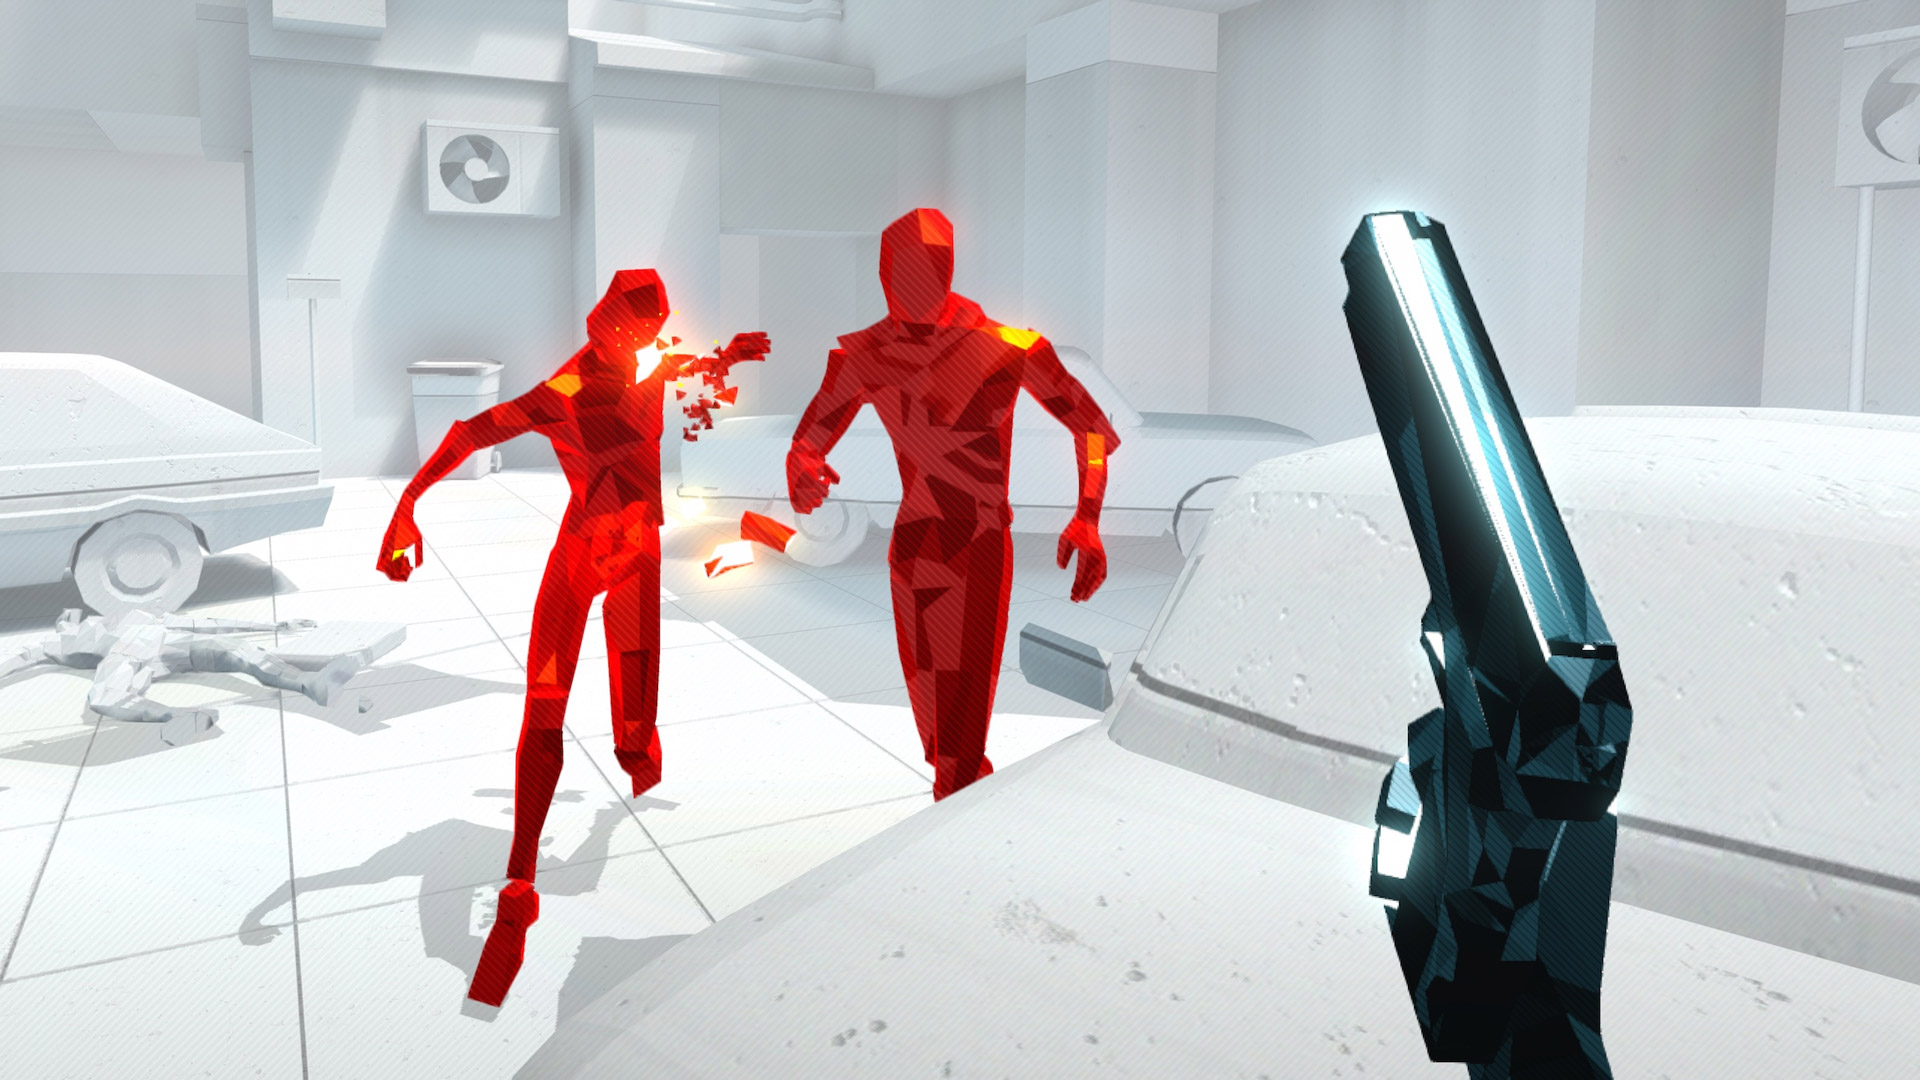 Игры потратить время. Superhot VR ps4. Супер хот 2 ВР. Игра VR super hot. Игра с красным человечком.